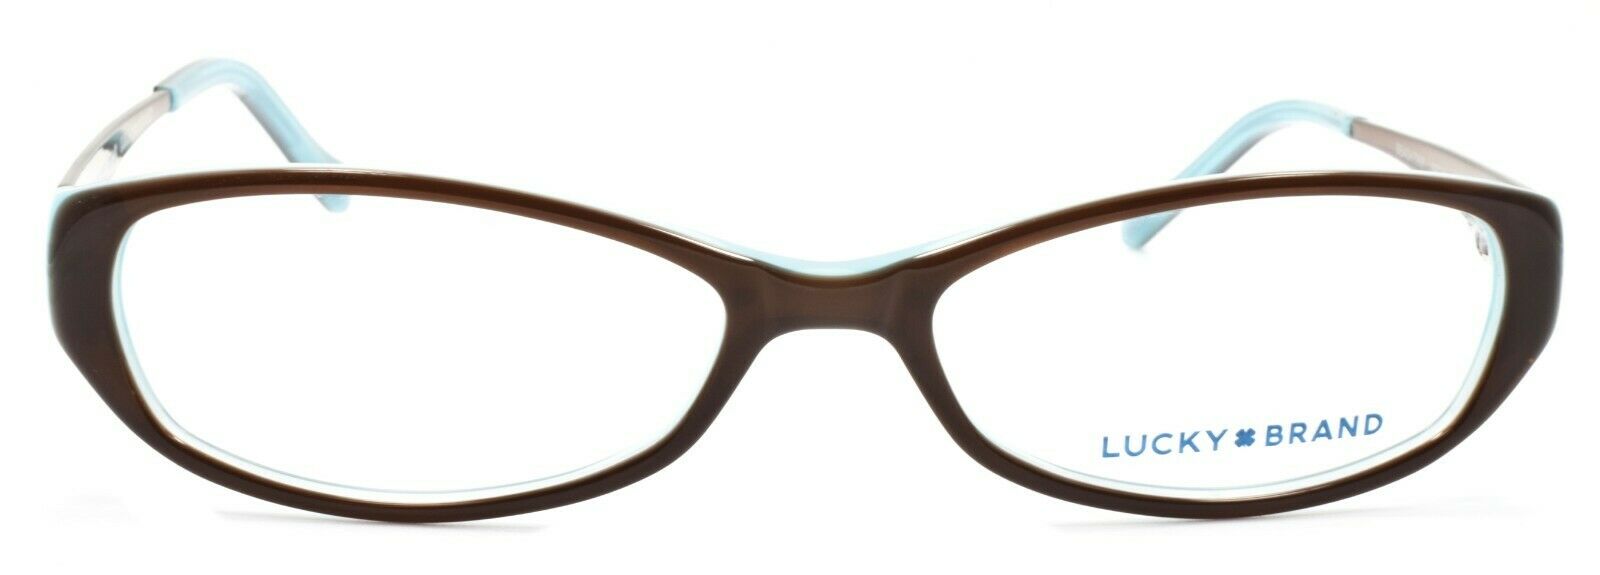 2-LUCKY BRAND Beach Trip Women's Eyeglasses Frames SMALL 49-15-135 Brown + CASE-751286214956-IKSpecs